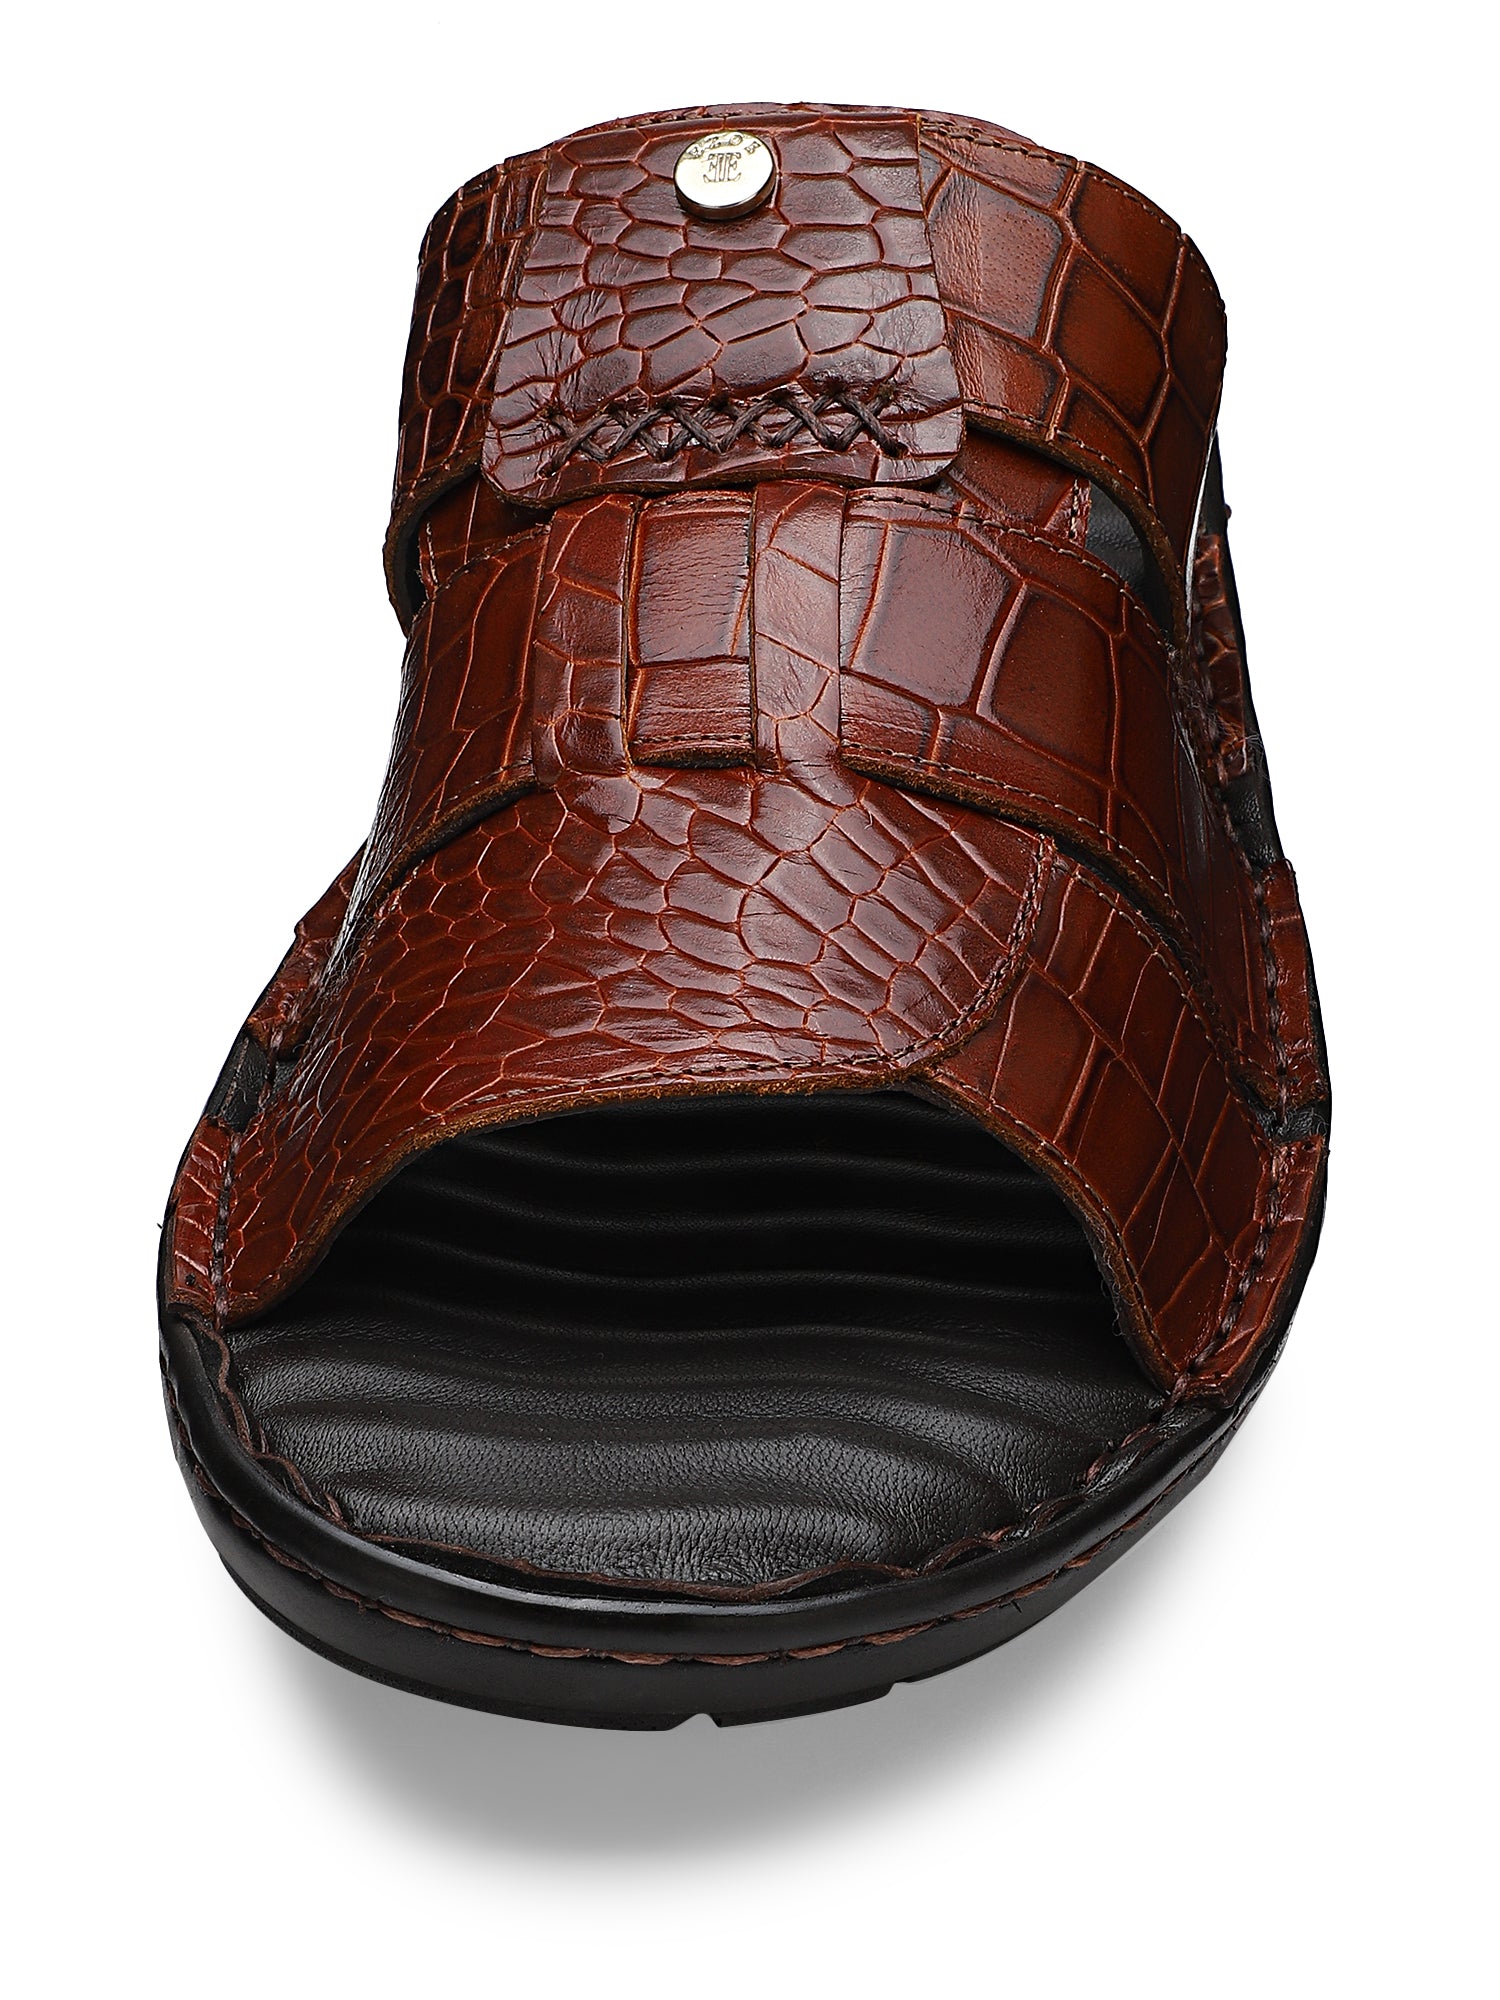 Ezok Men Croco Leather Oscar Sandal 2301